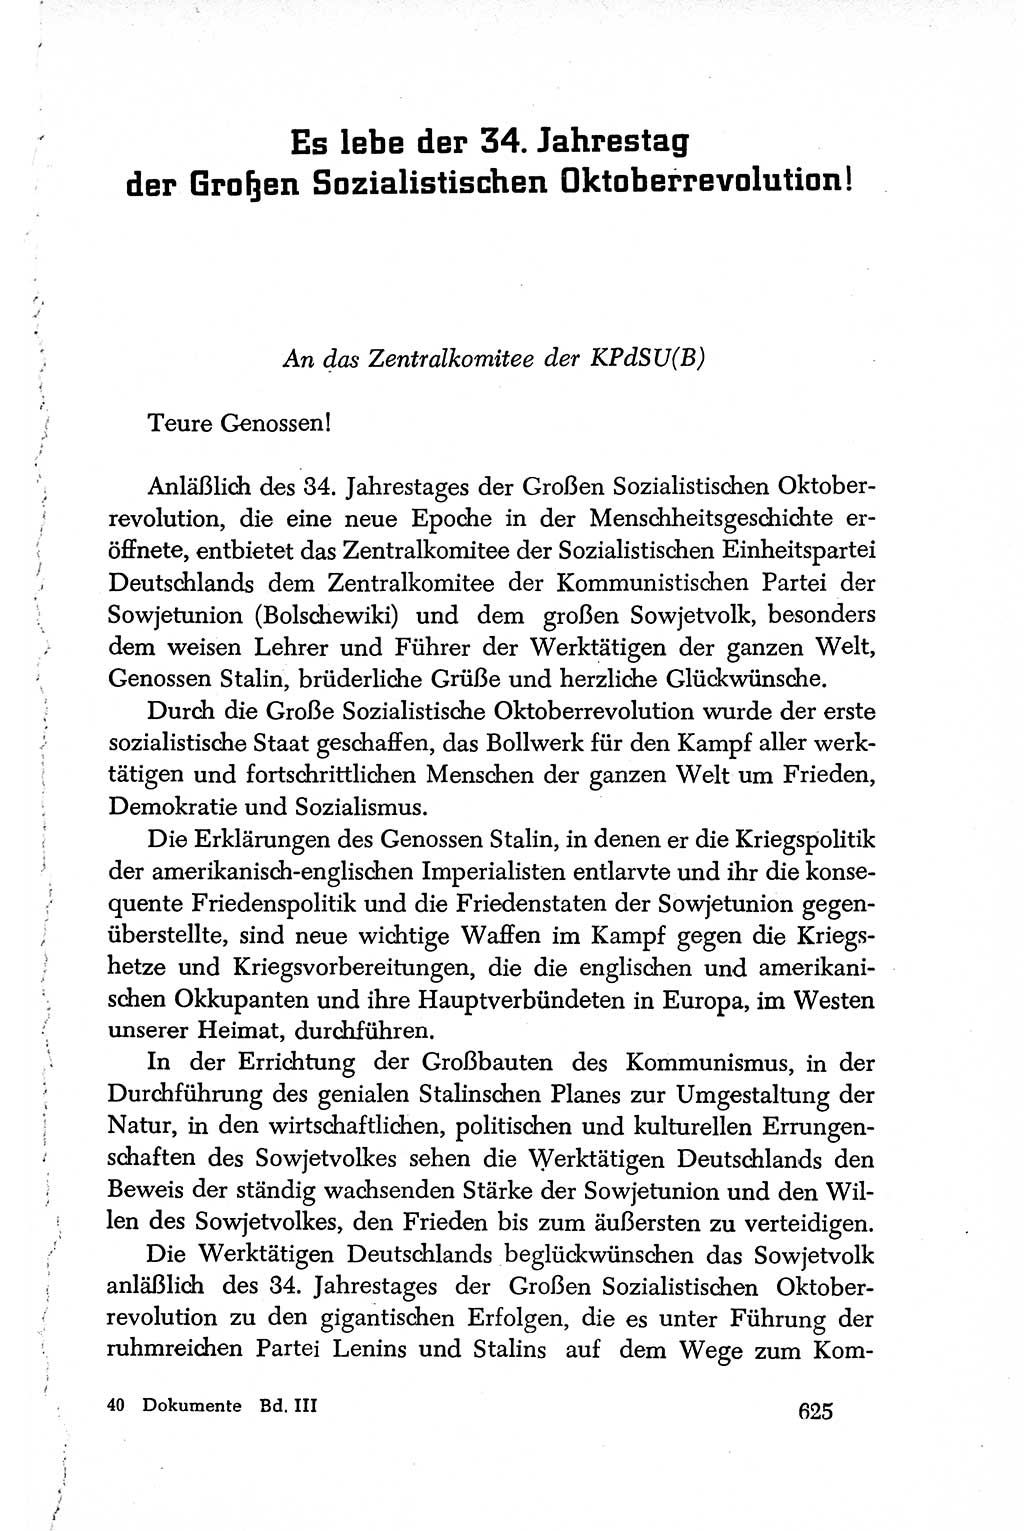 Dokumente der Sozialistischen Einheitspartei Deutschlands (SED) [Deutsche Demokratische Republik (DDR)] 1950-1952, Seite 625 (Dok. SED DDR 1950-1952, S. 625)